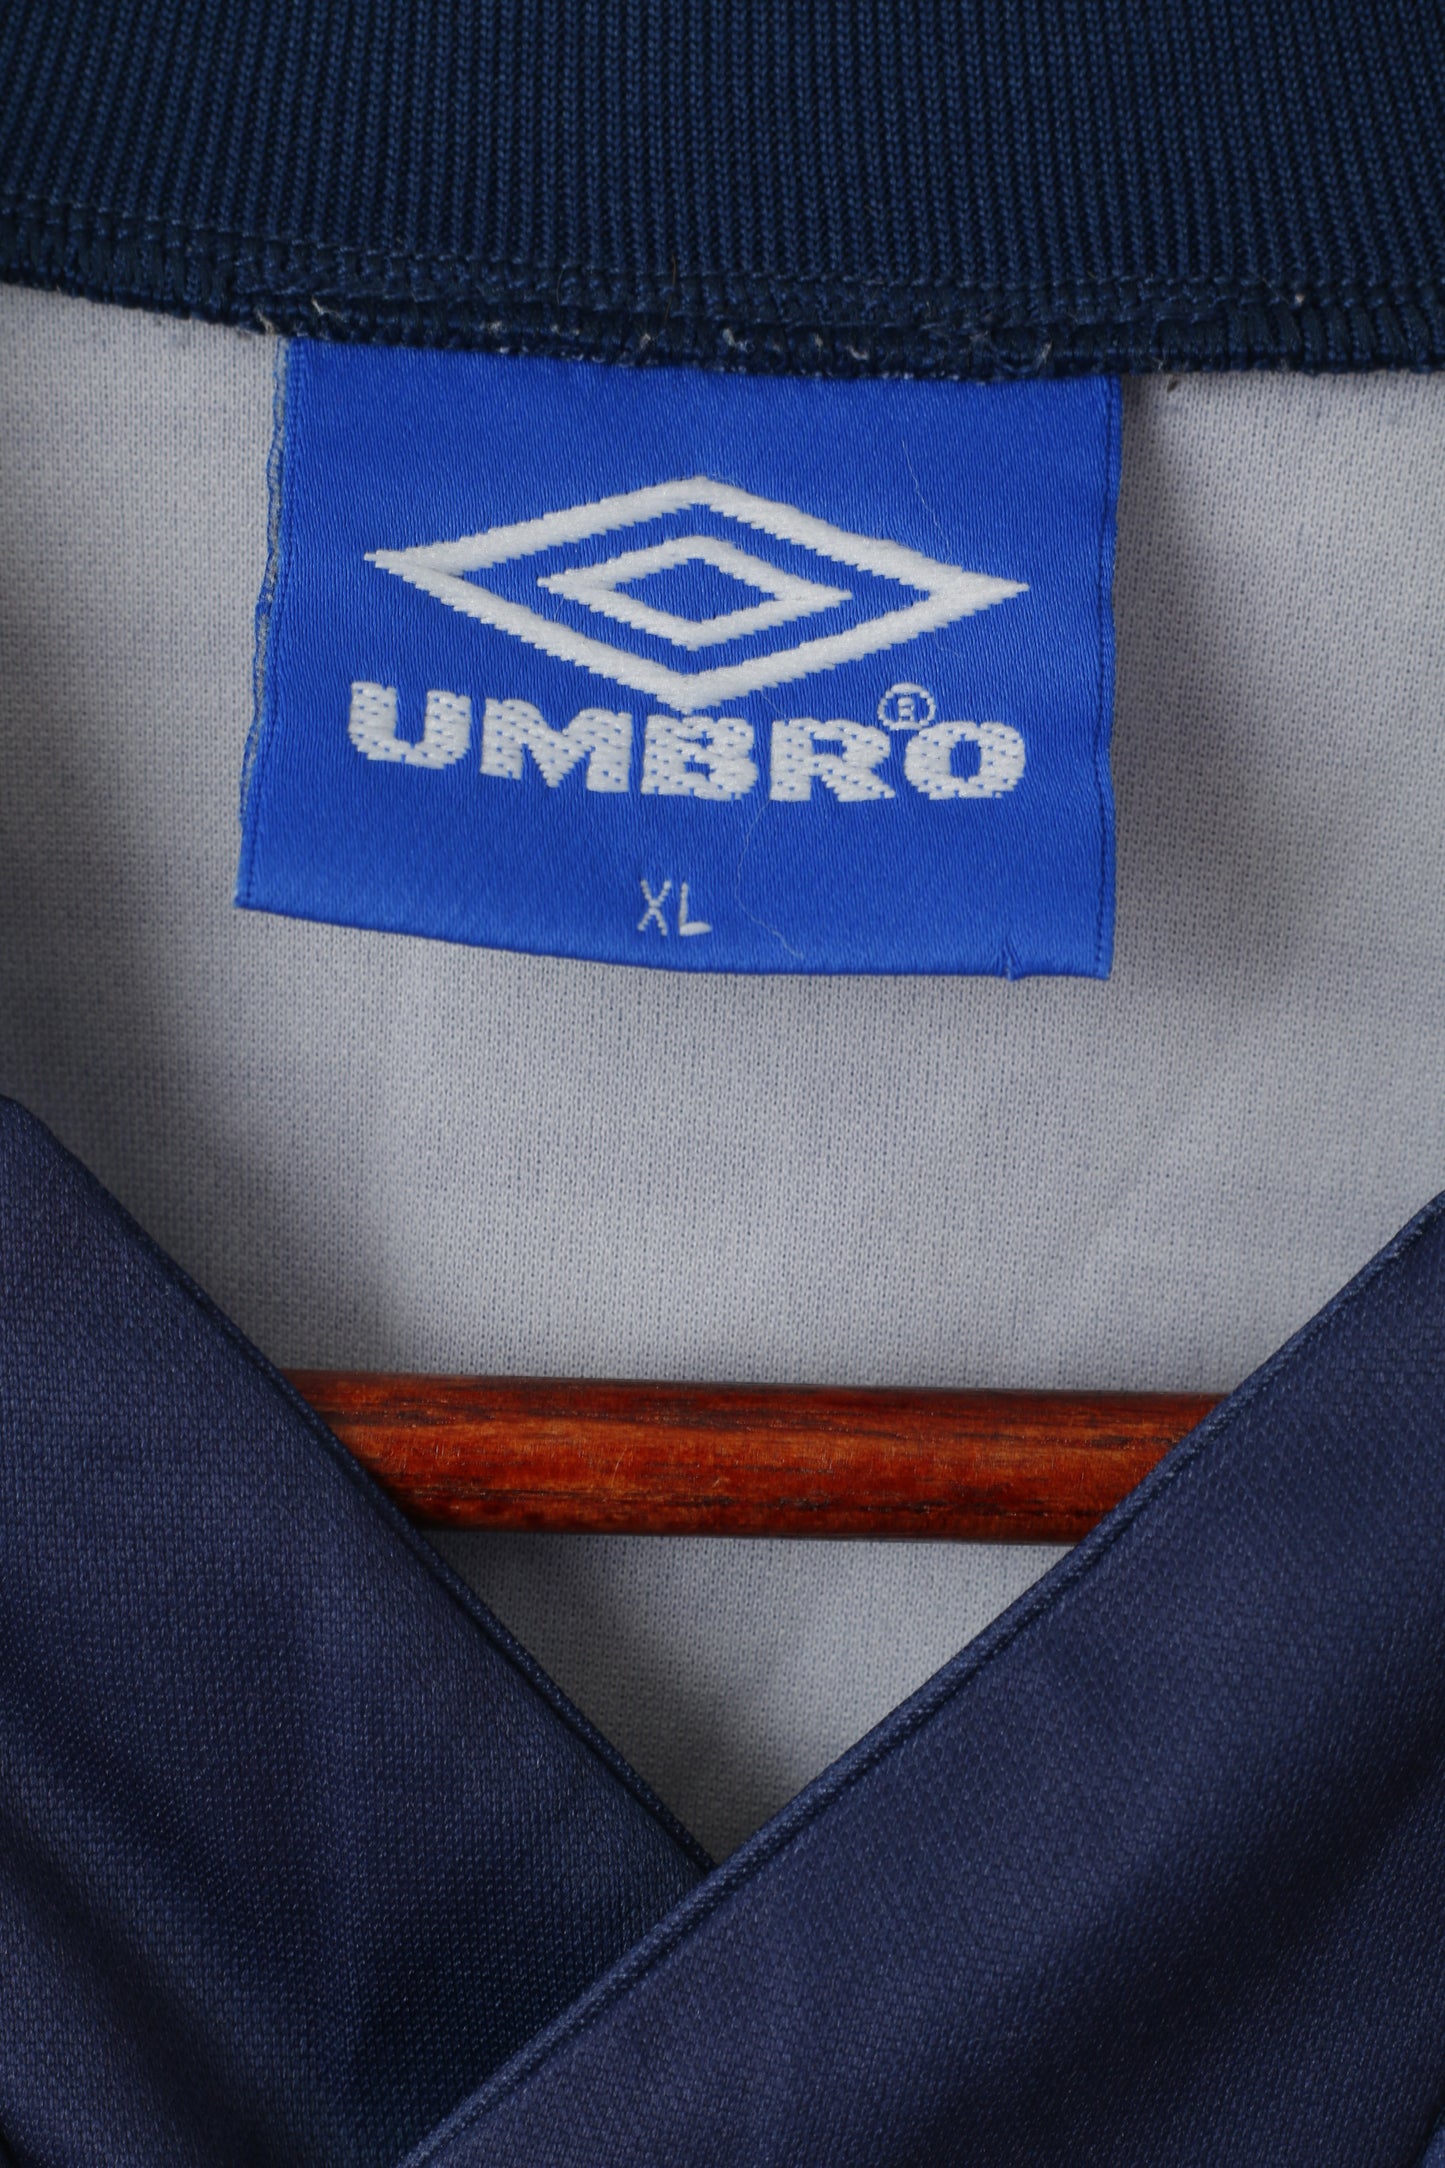 Umbro Homme XL Chemise à Manches Longues Marine Vintage Maillot de Football Haut Imprimé